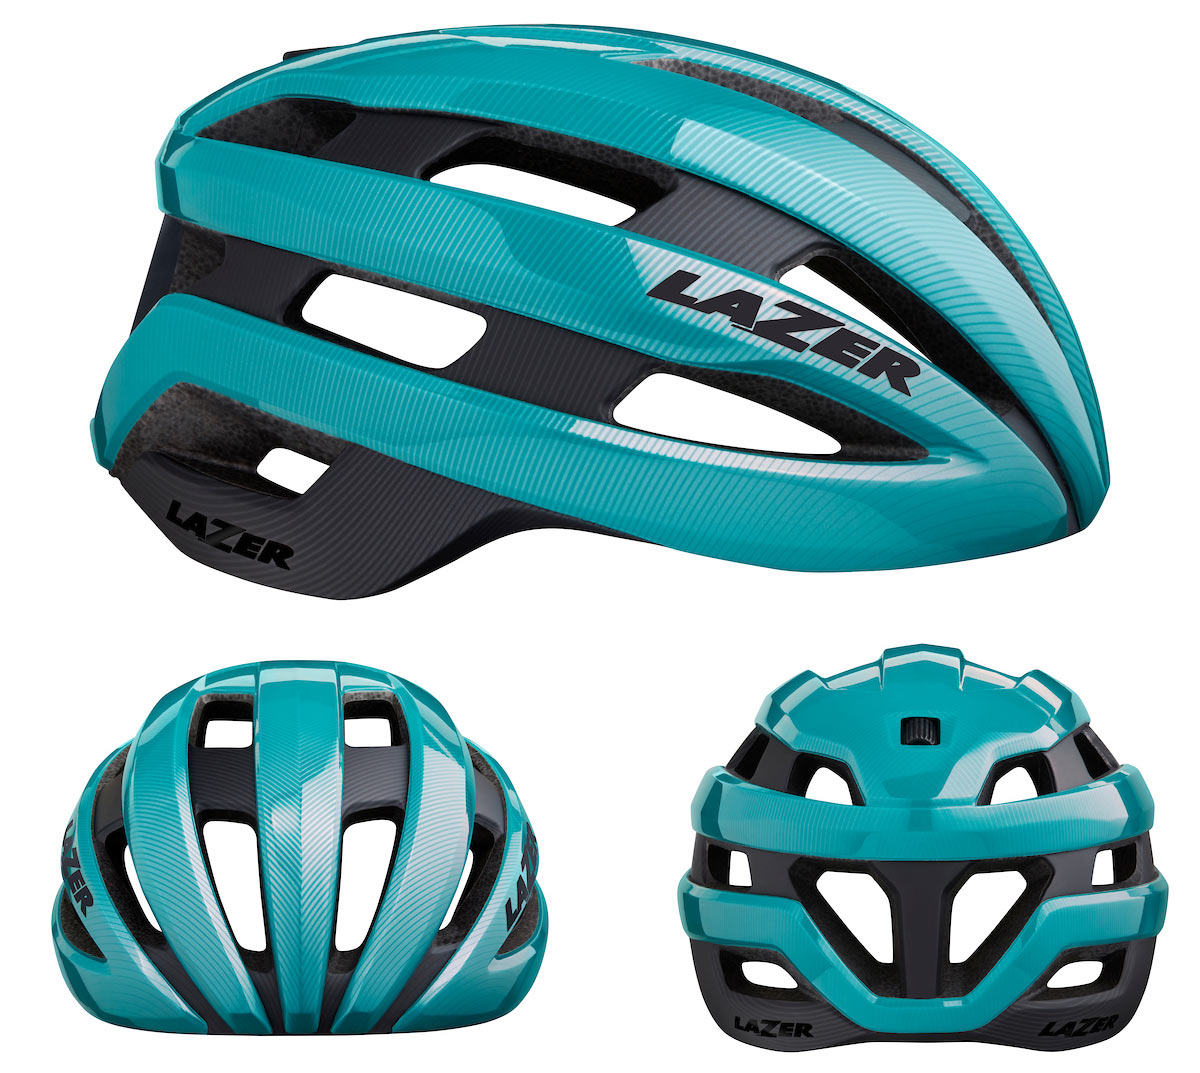 lazer-sphere-road-bike-helmet-details-and-colors-6.jpg